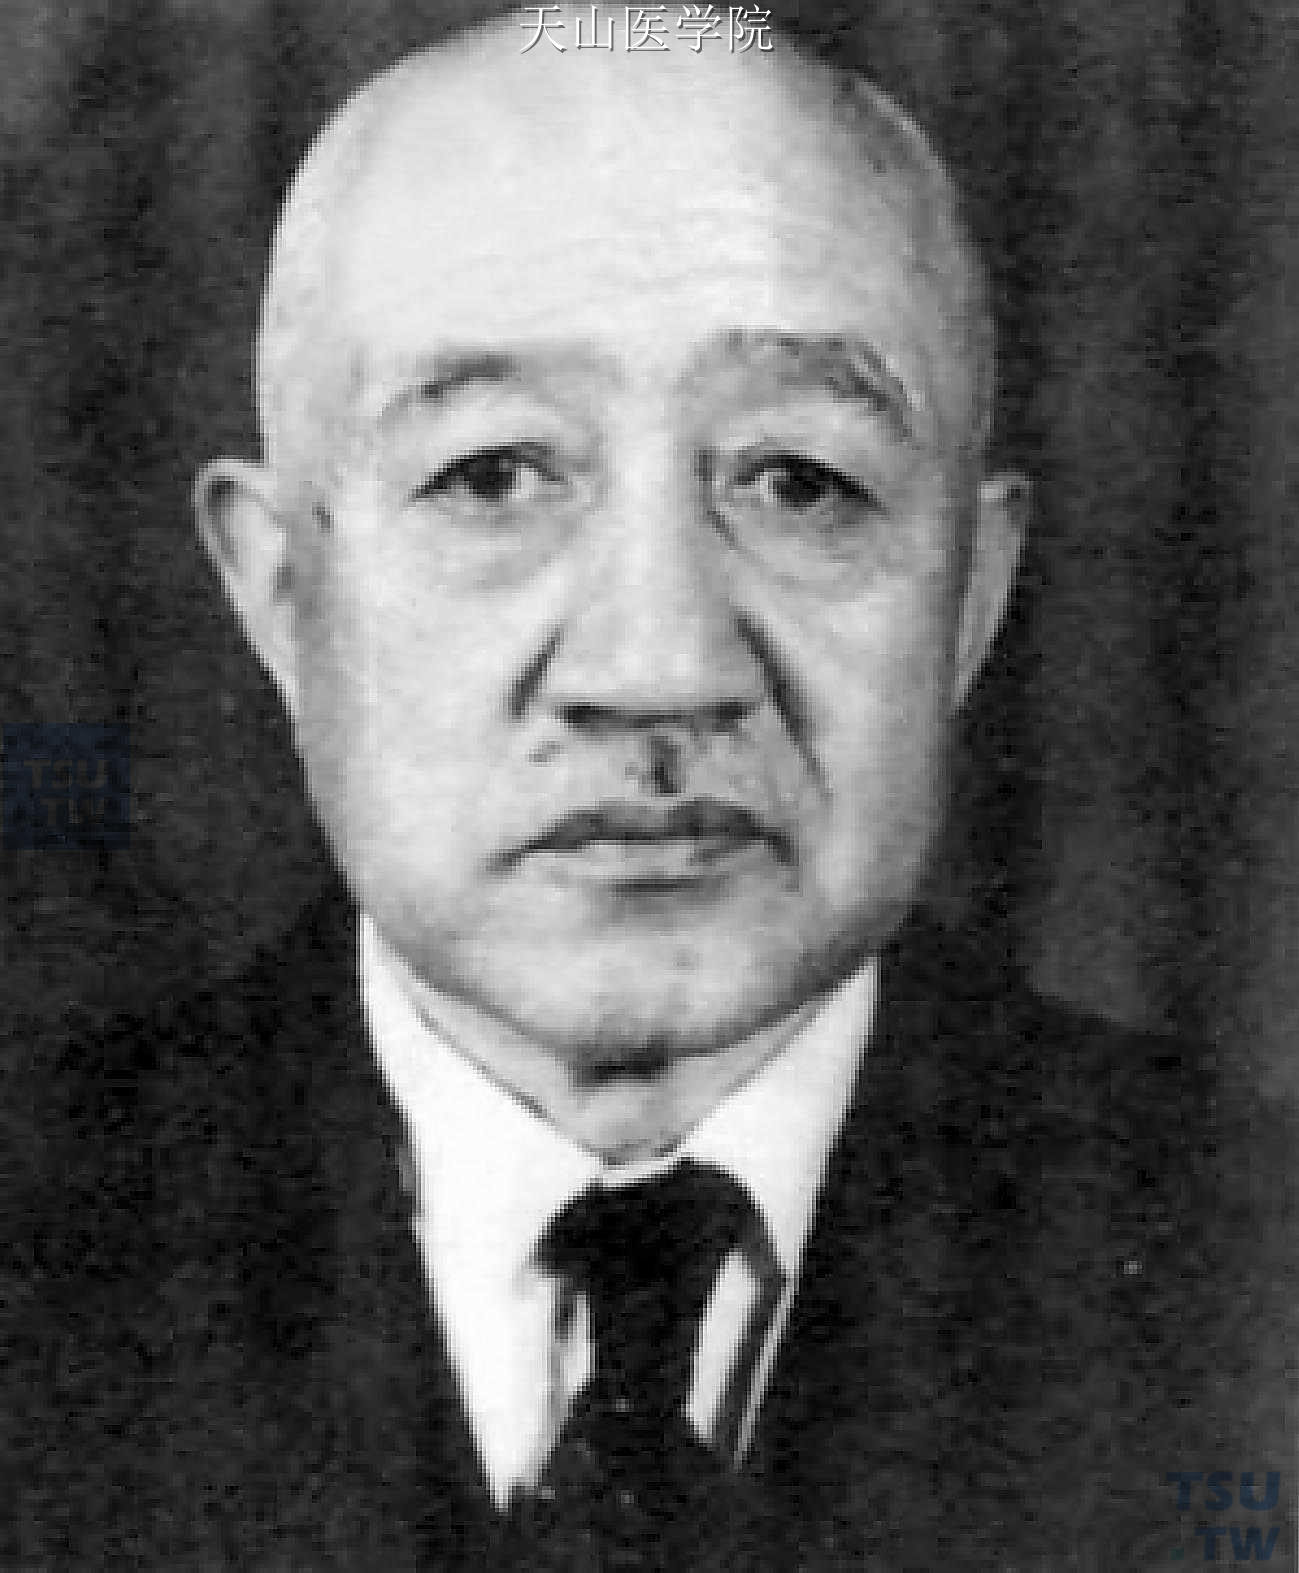 土肥原贤二，日本甲级战犯，于1948年12月23日被处以绞刑。在东京审判法庭上，以“破坏和平罪”“杀人罪”“反人道罪”三项罪名被起诉。在策划对华毒化政策方面是日本的首要人物，因此，国际法庭对他进行了重点调查。